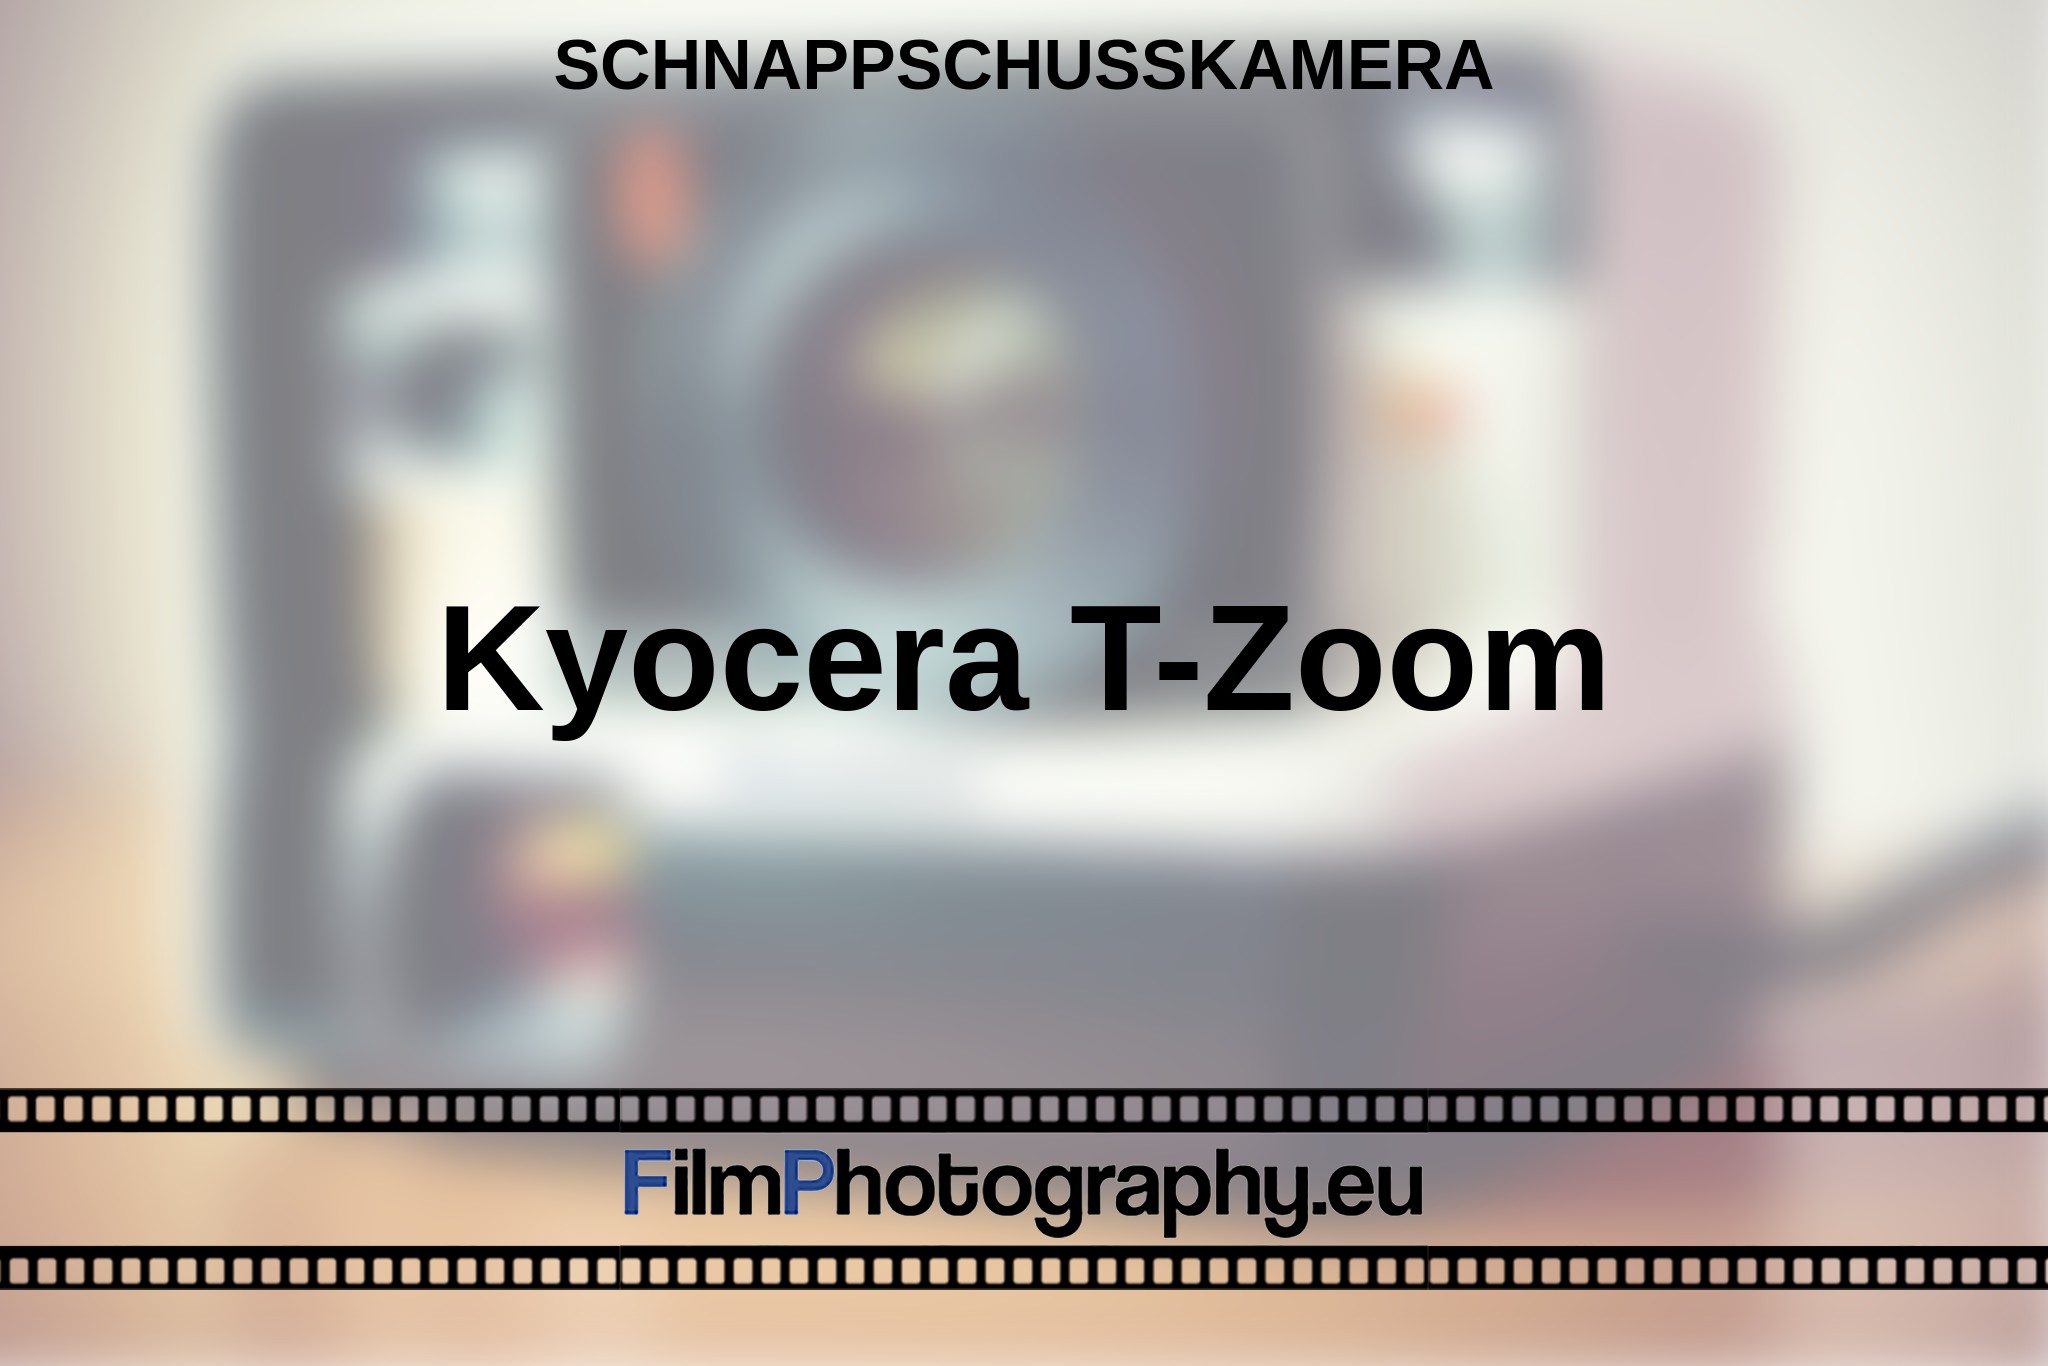 kyocera-t-zoom-schnappschusskamera-bnv.jpg